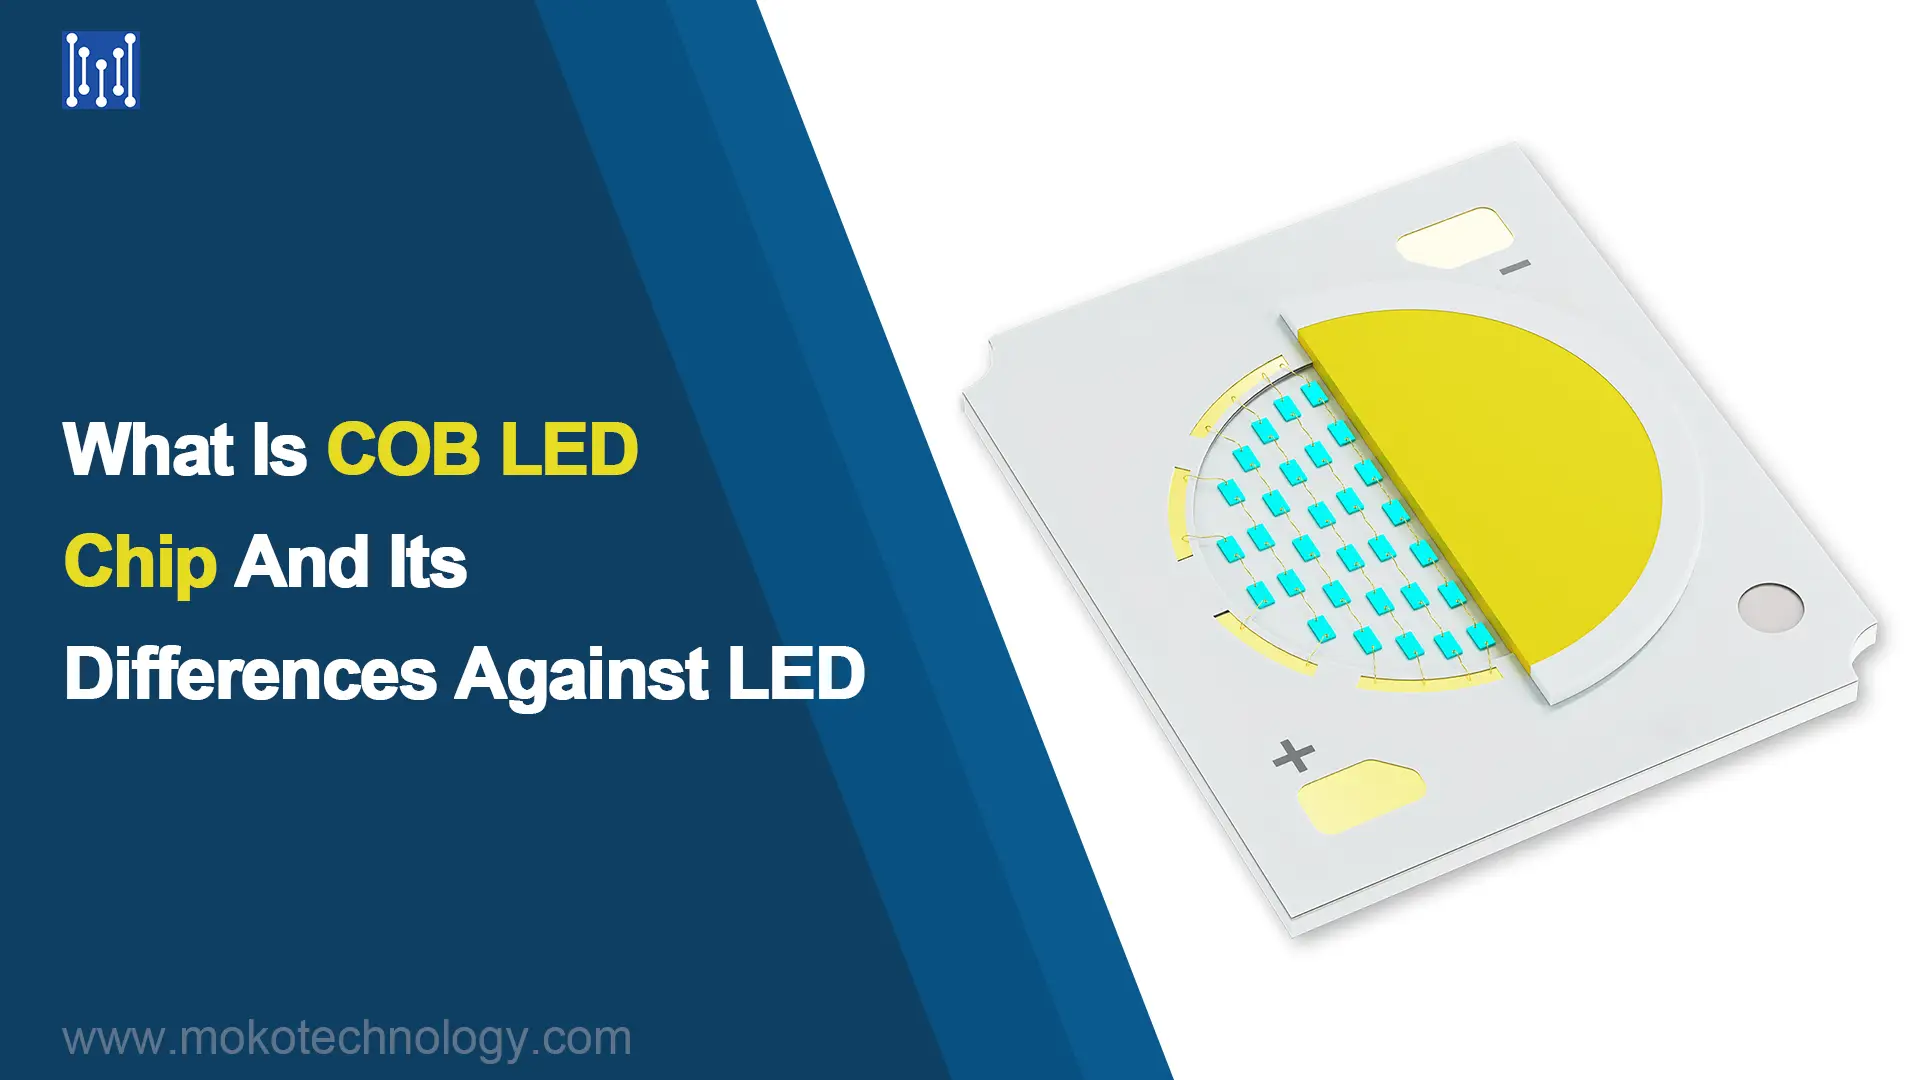 COB LEDチップとは何か、およびLEDとの違い